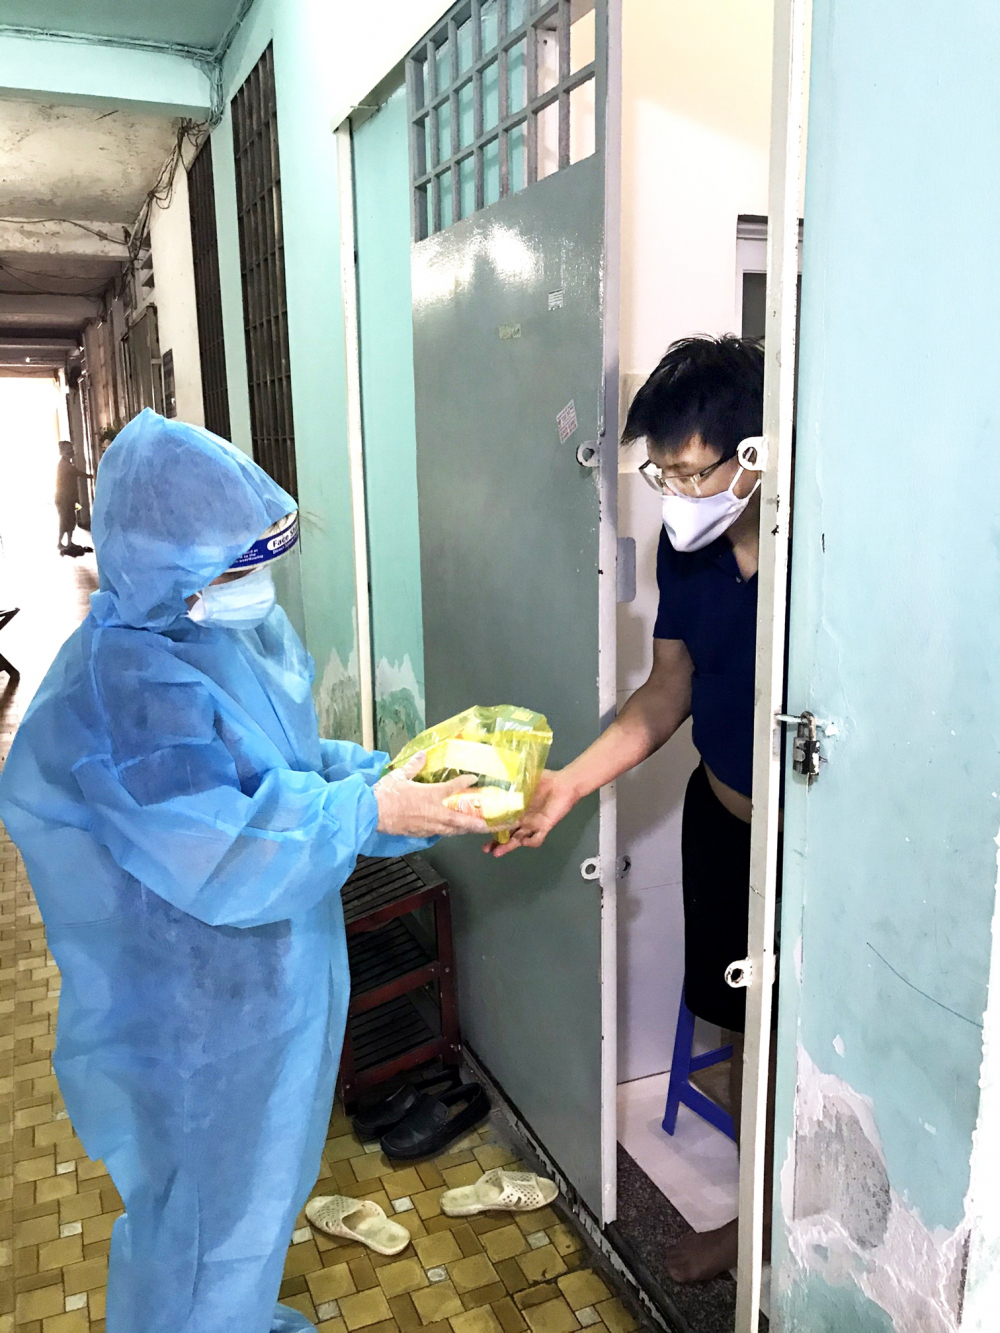 Bác sĩ Học viện Quân y tham gia Trạm y tế lưu động đến khám chữa bệnh tại nhà cho người mắc COVID-1 ở phường 14, quận Tân Bình Ảnh: Hoàng Tuyết